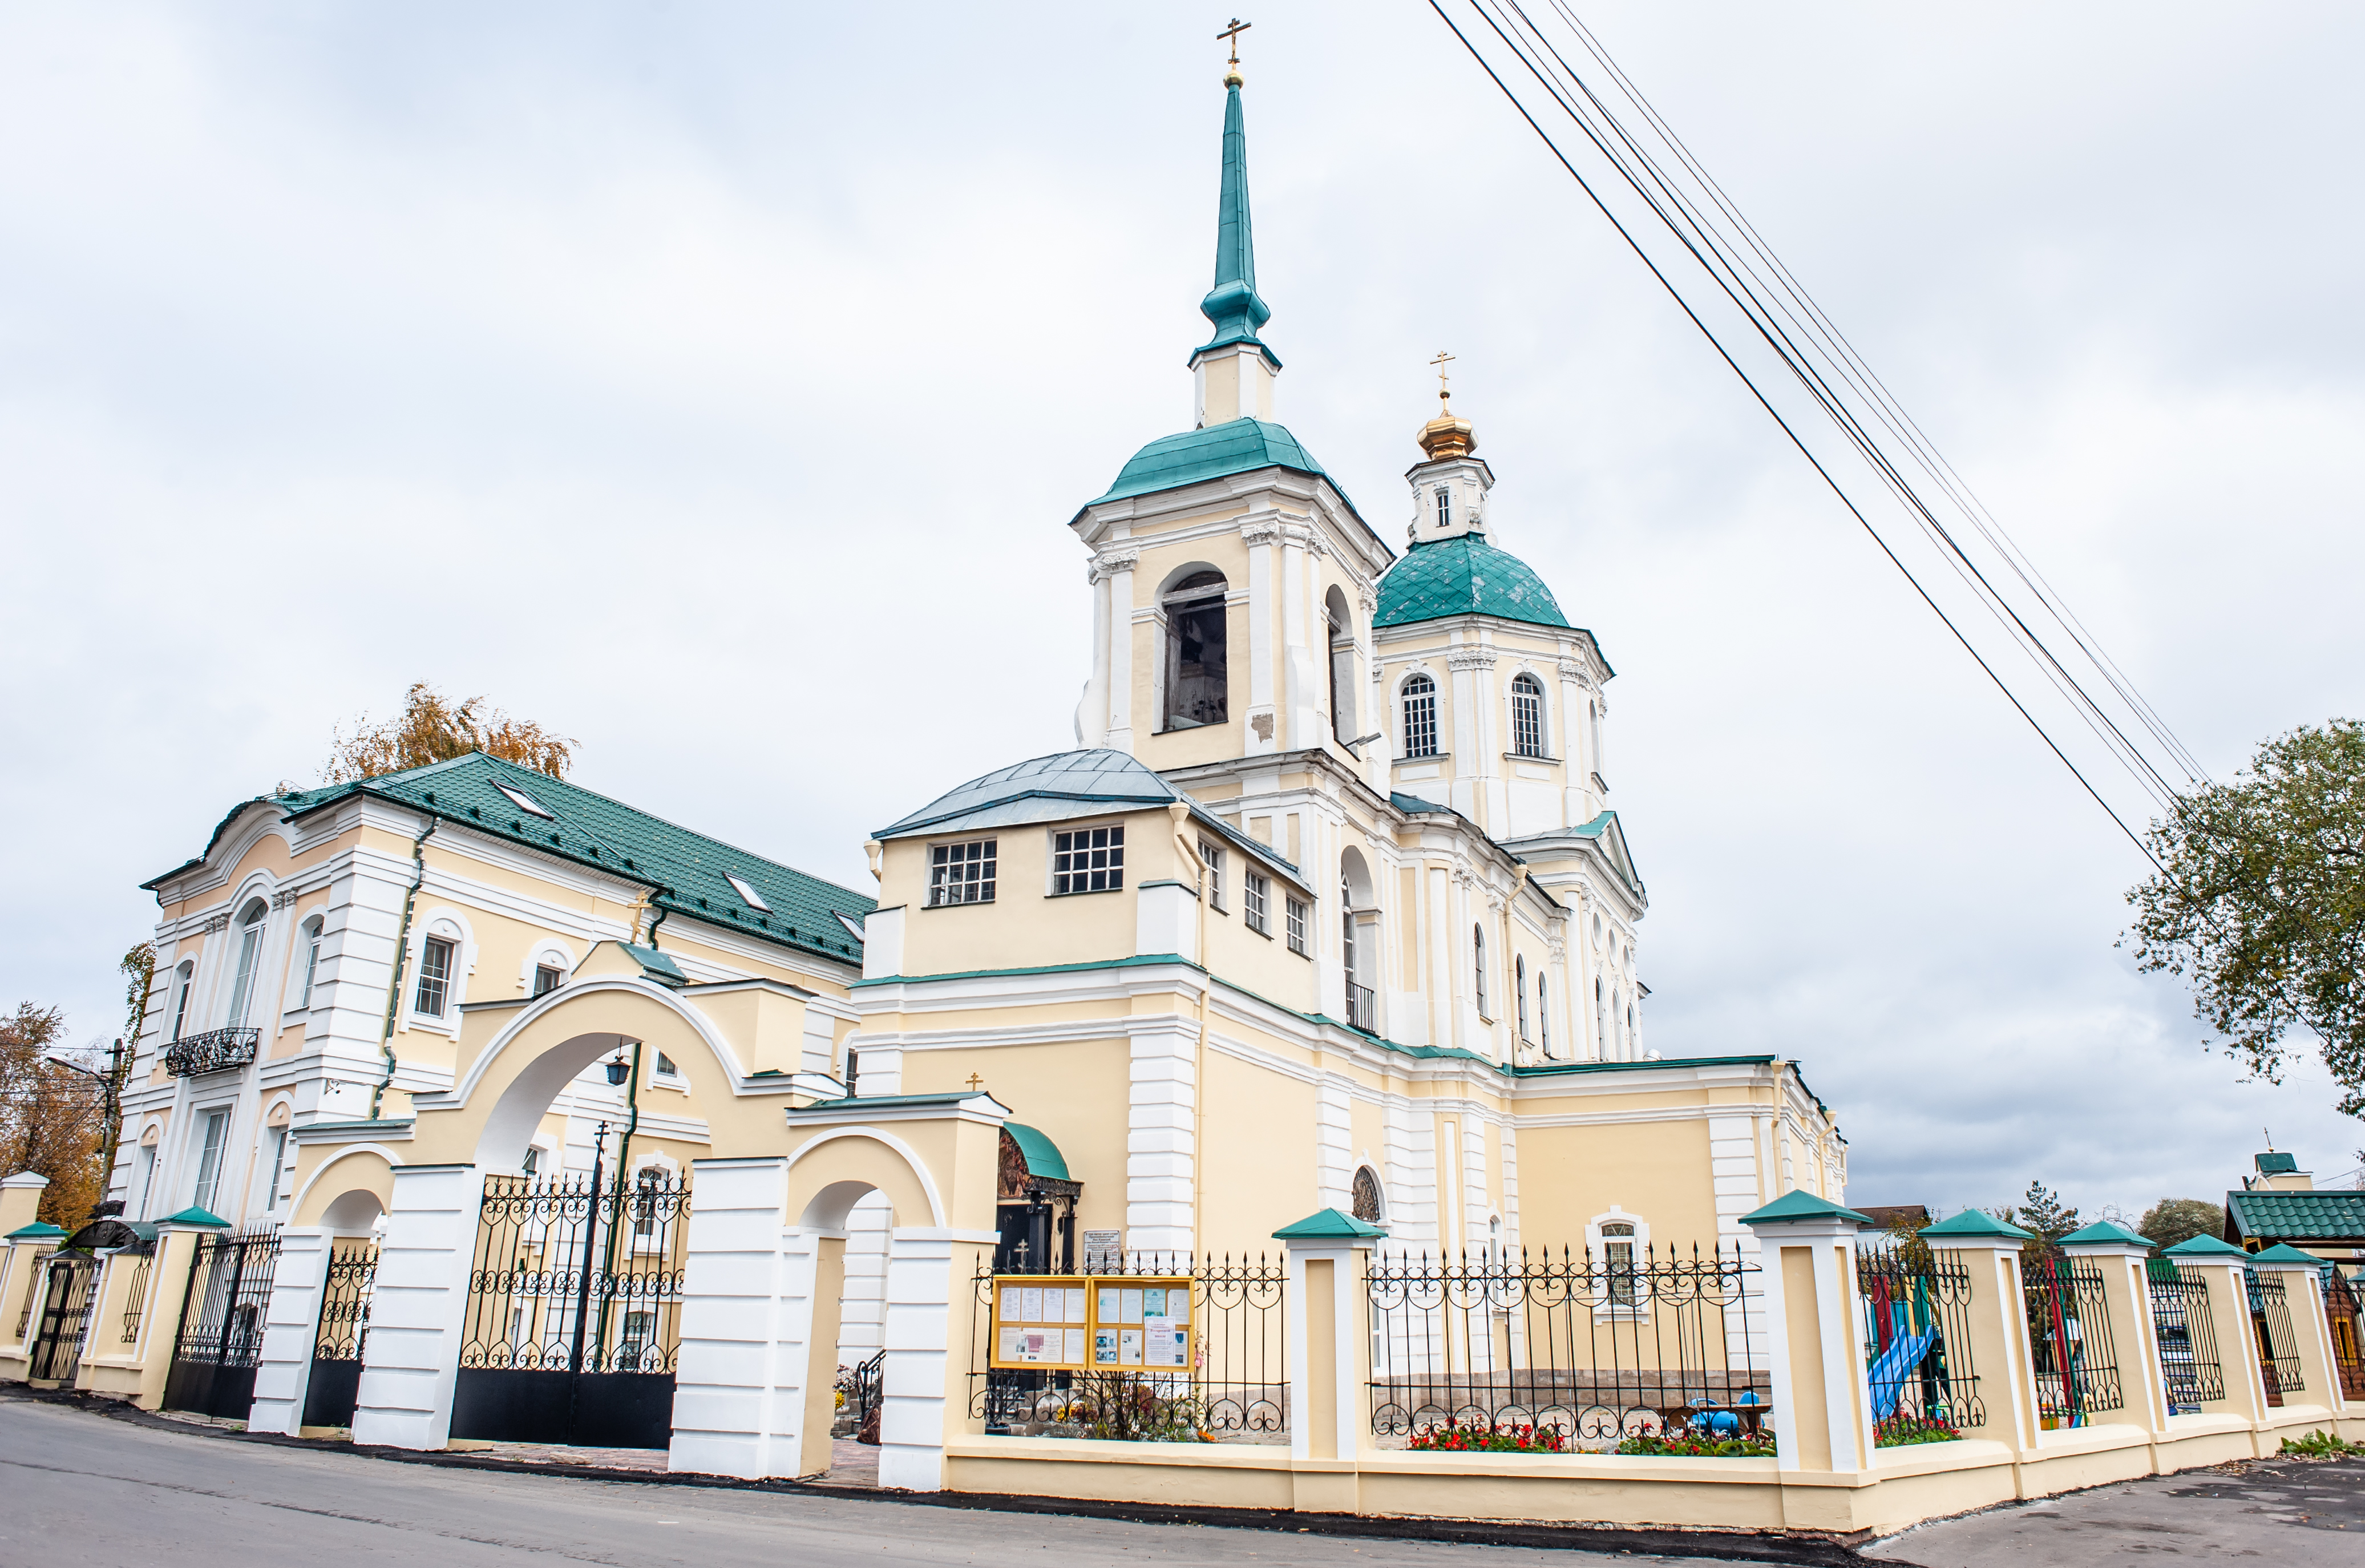 Двухэтажное кирпичное здание храма с продольно-осевой композицией «кораблем» принадлежит к своеобразному типу церквей русского барокко